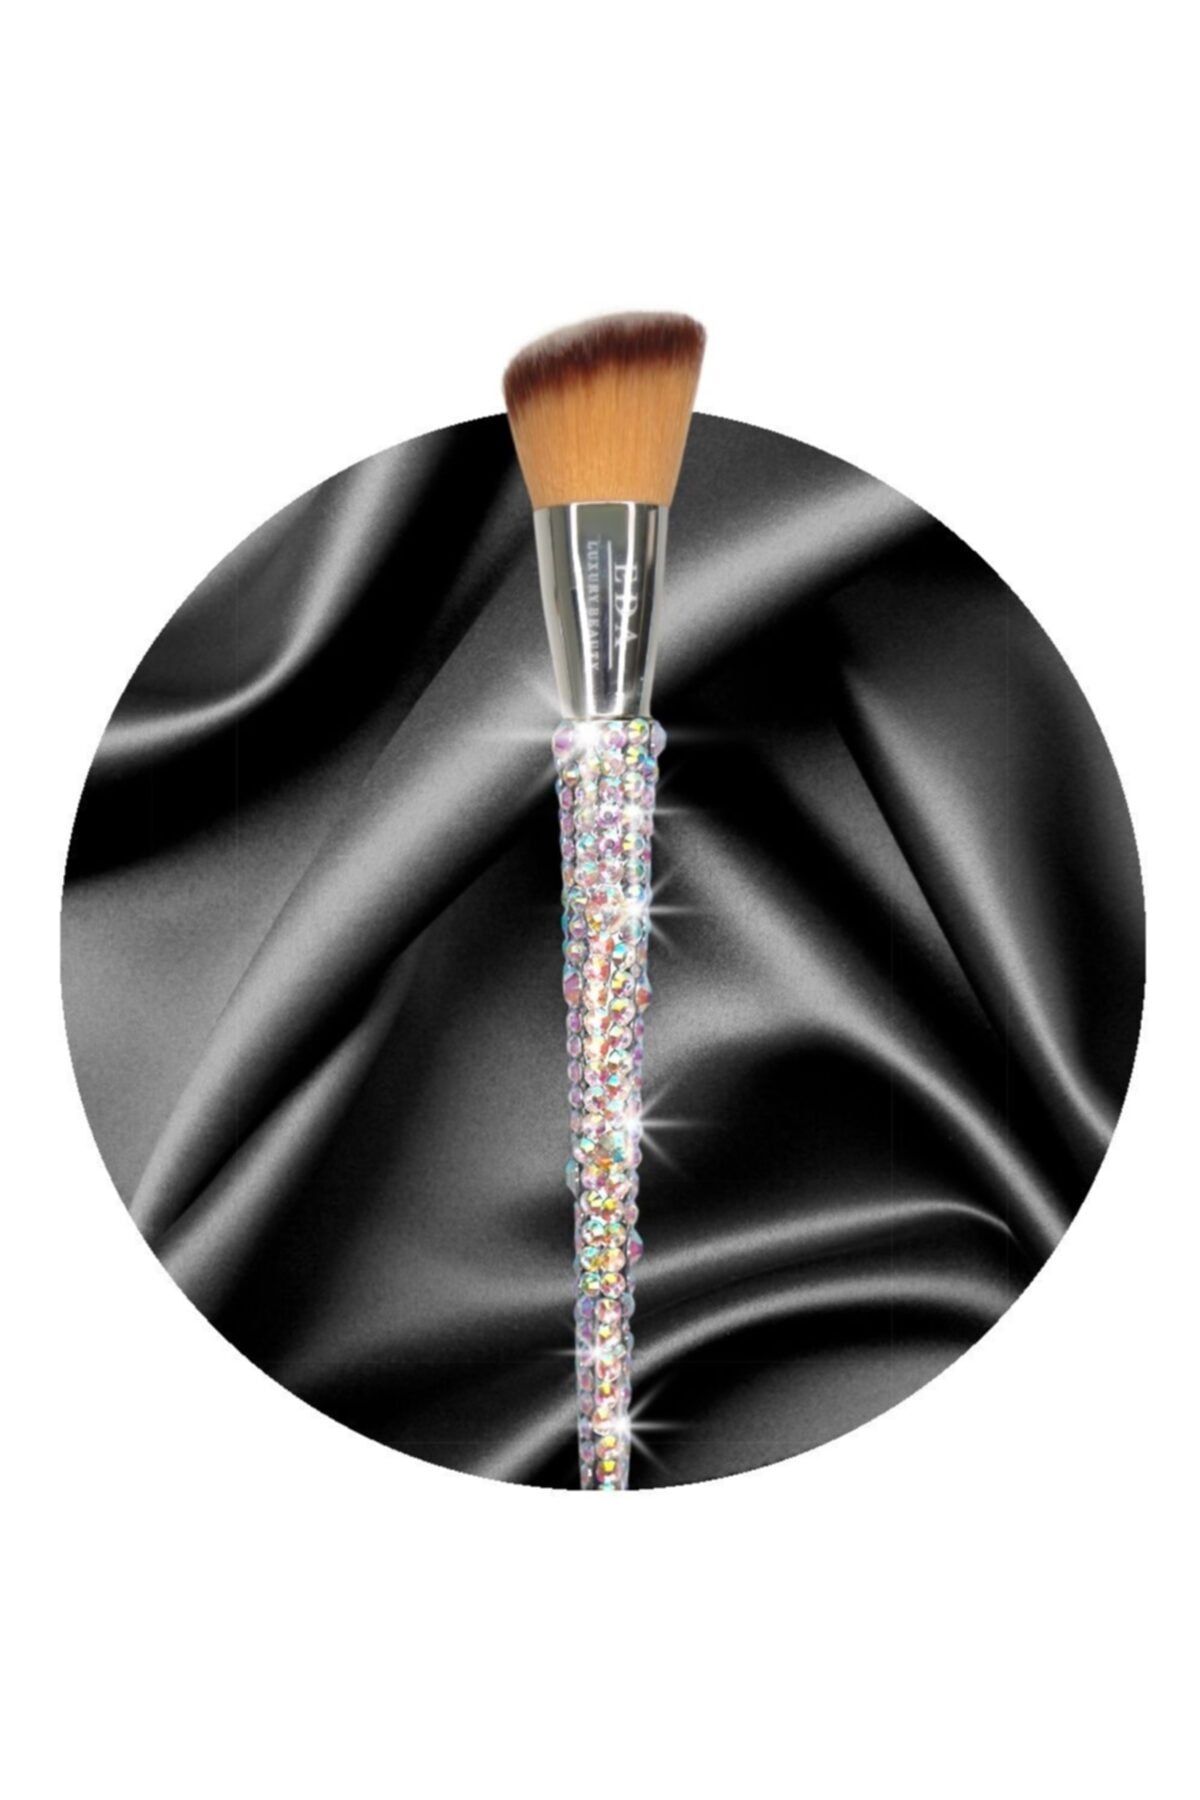 EDA LUXURY BEAUTY Çok Amaçlı Köşeli Makyaj Fırçası Kristal Taşlı Allık Kontür Bronzer Aydınlatıcı Blush Makeup Brush